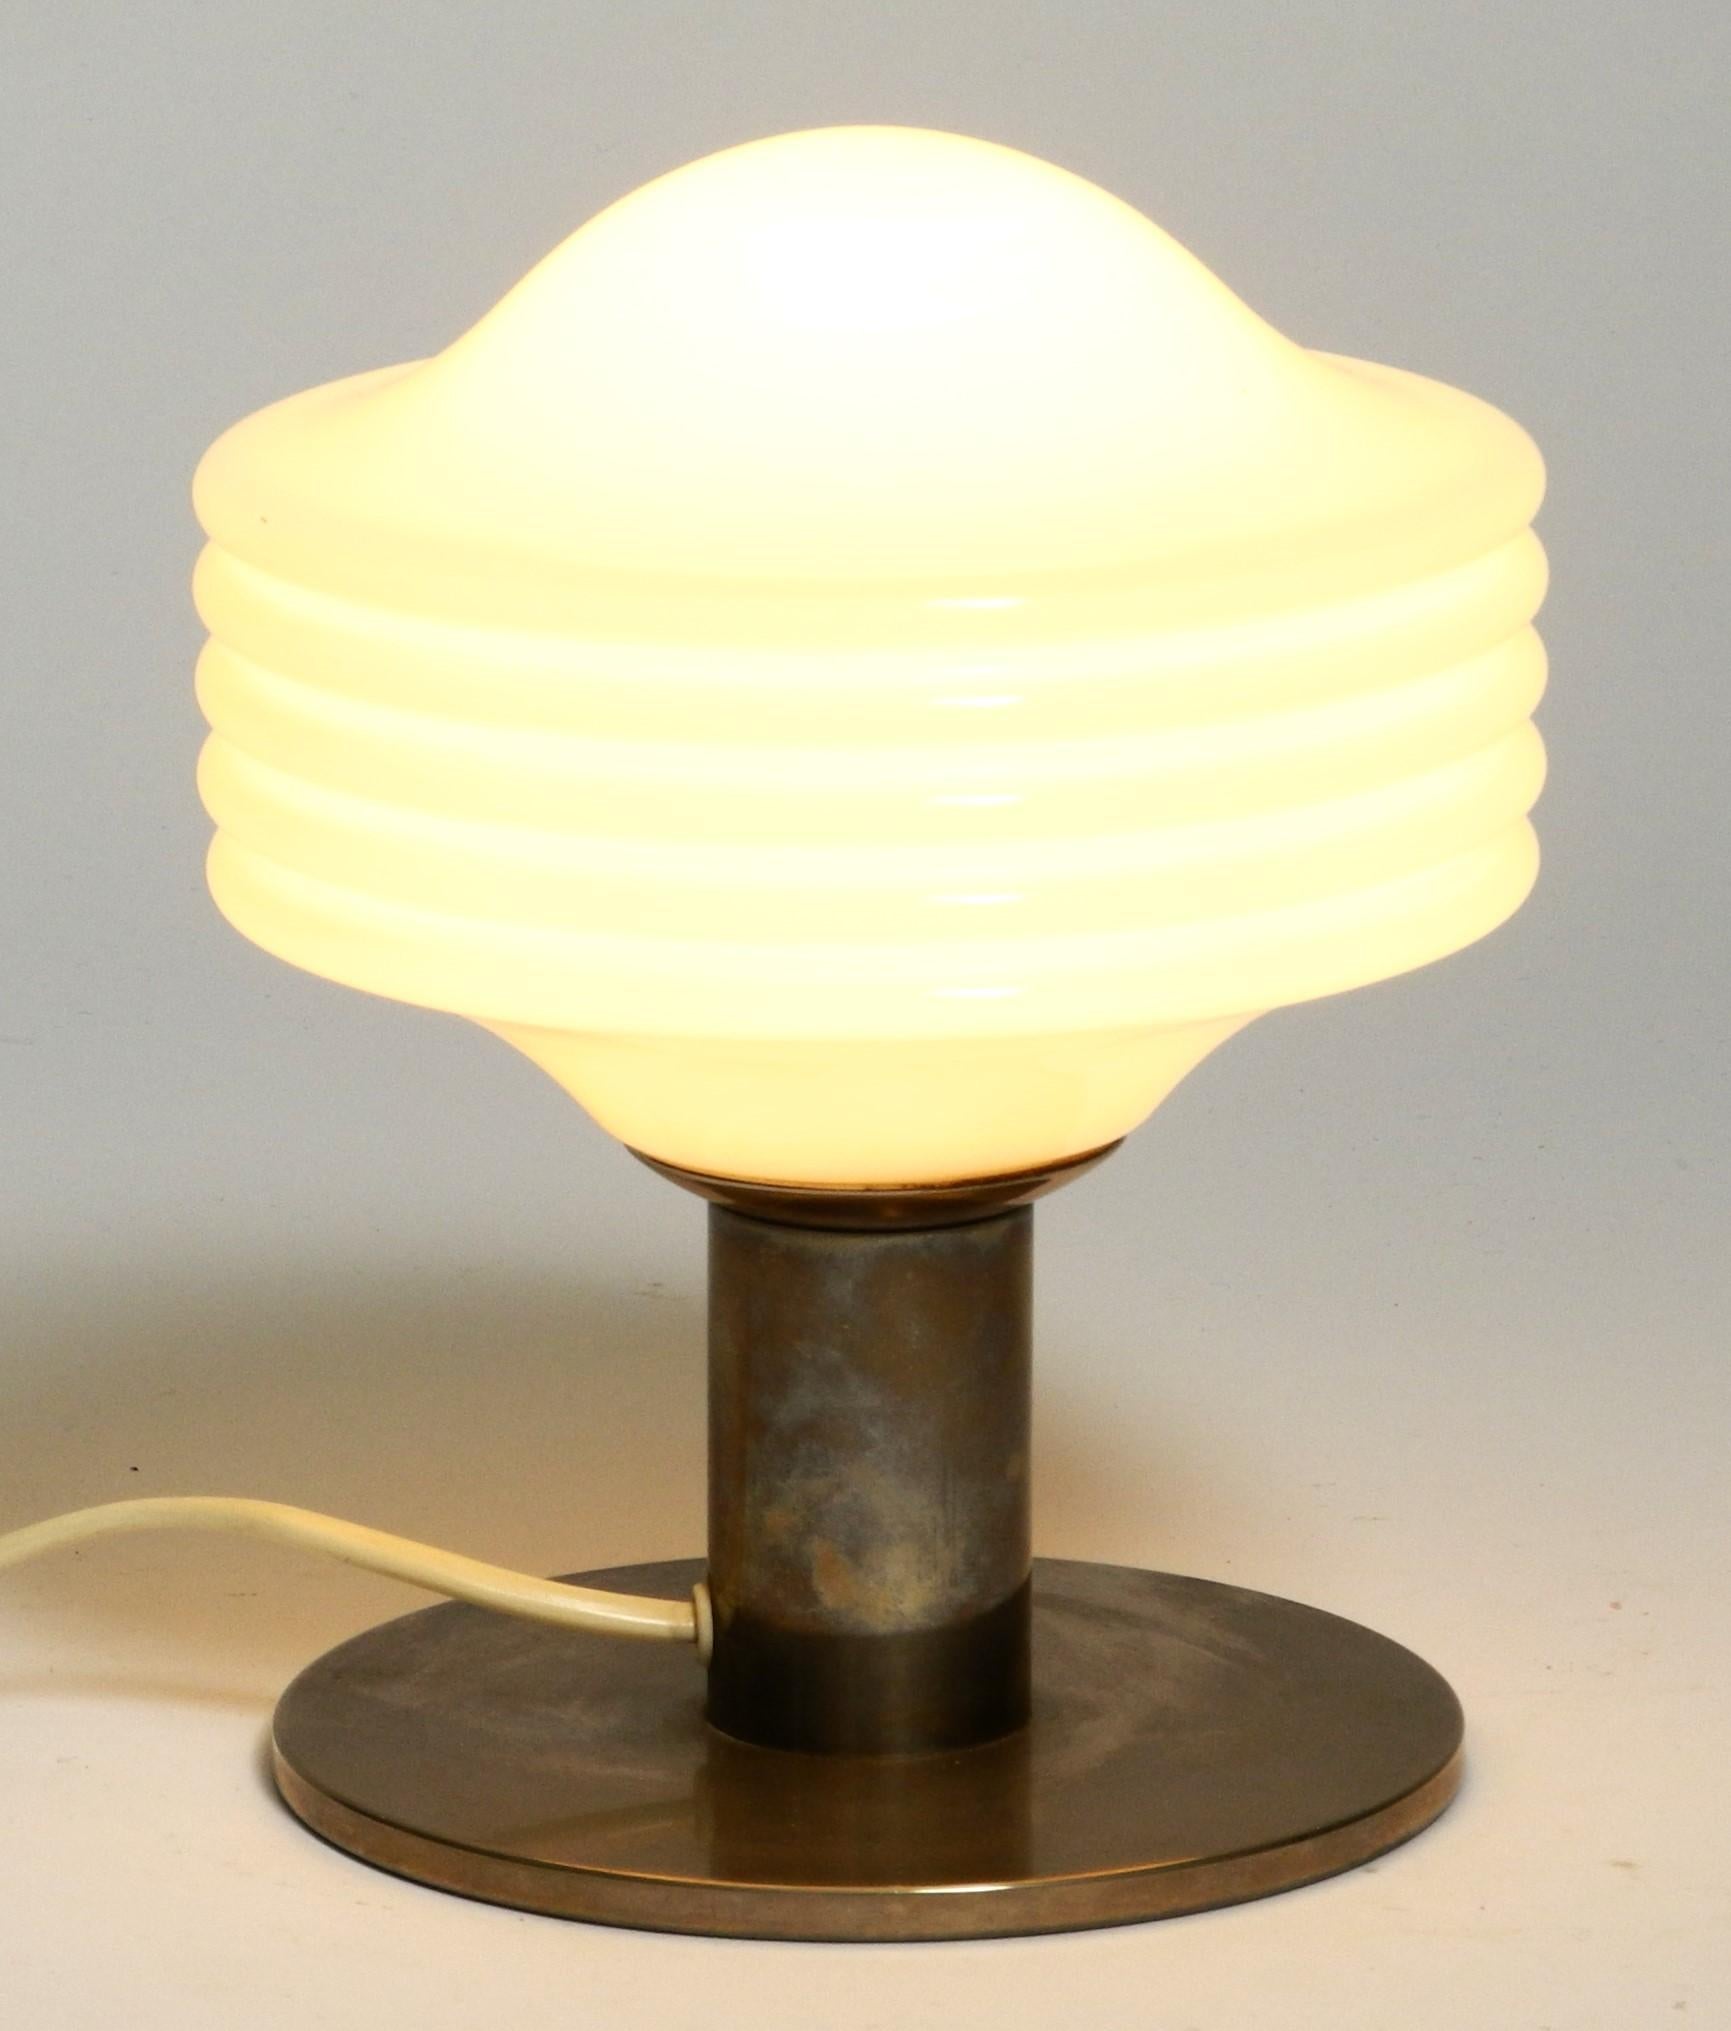 Jolie petite lampe de table de l'ère spatiale de Temde Leuchten, Suisse, années 1970.

La lampe est dotée d'un lourd pied chromé et d'un abat-jour en verre opalin. Le chromage est terni et donne à la lampe une belle patine. 

Aucun dommage,